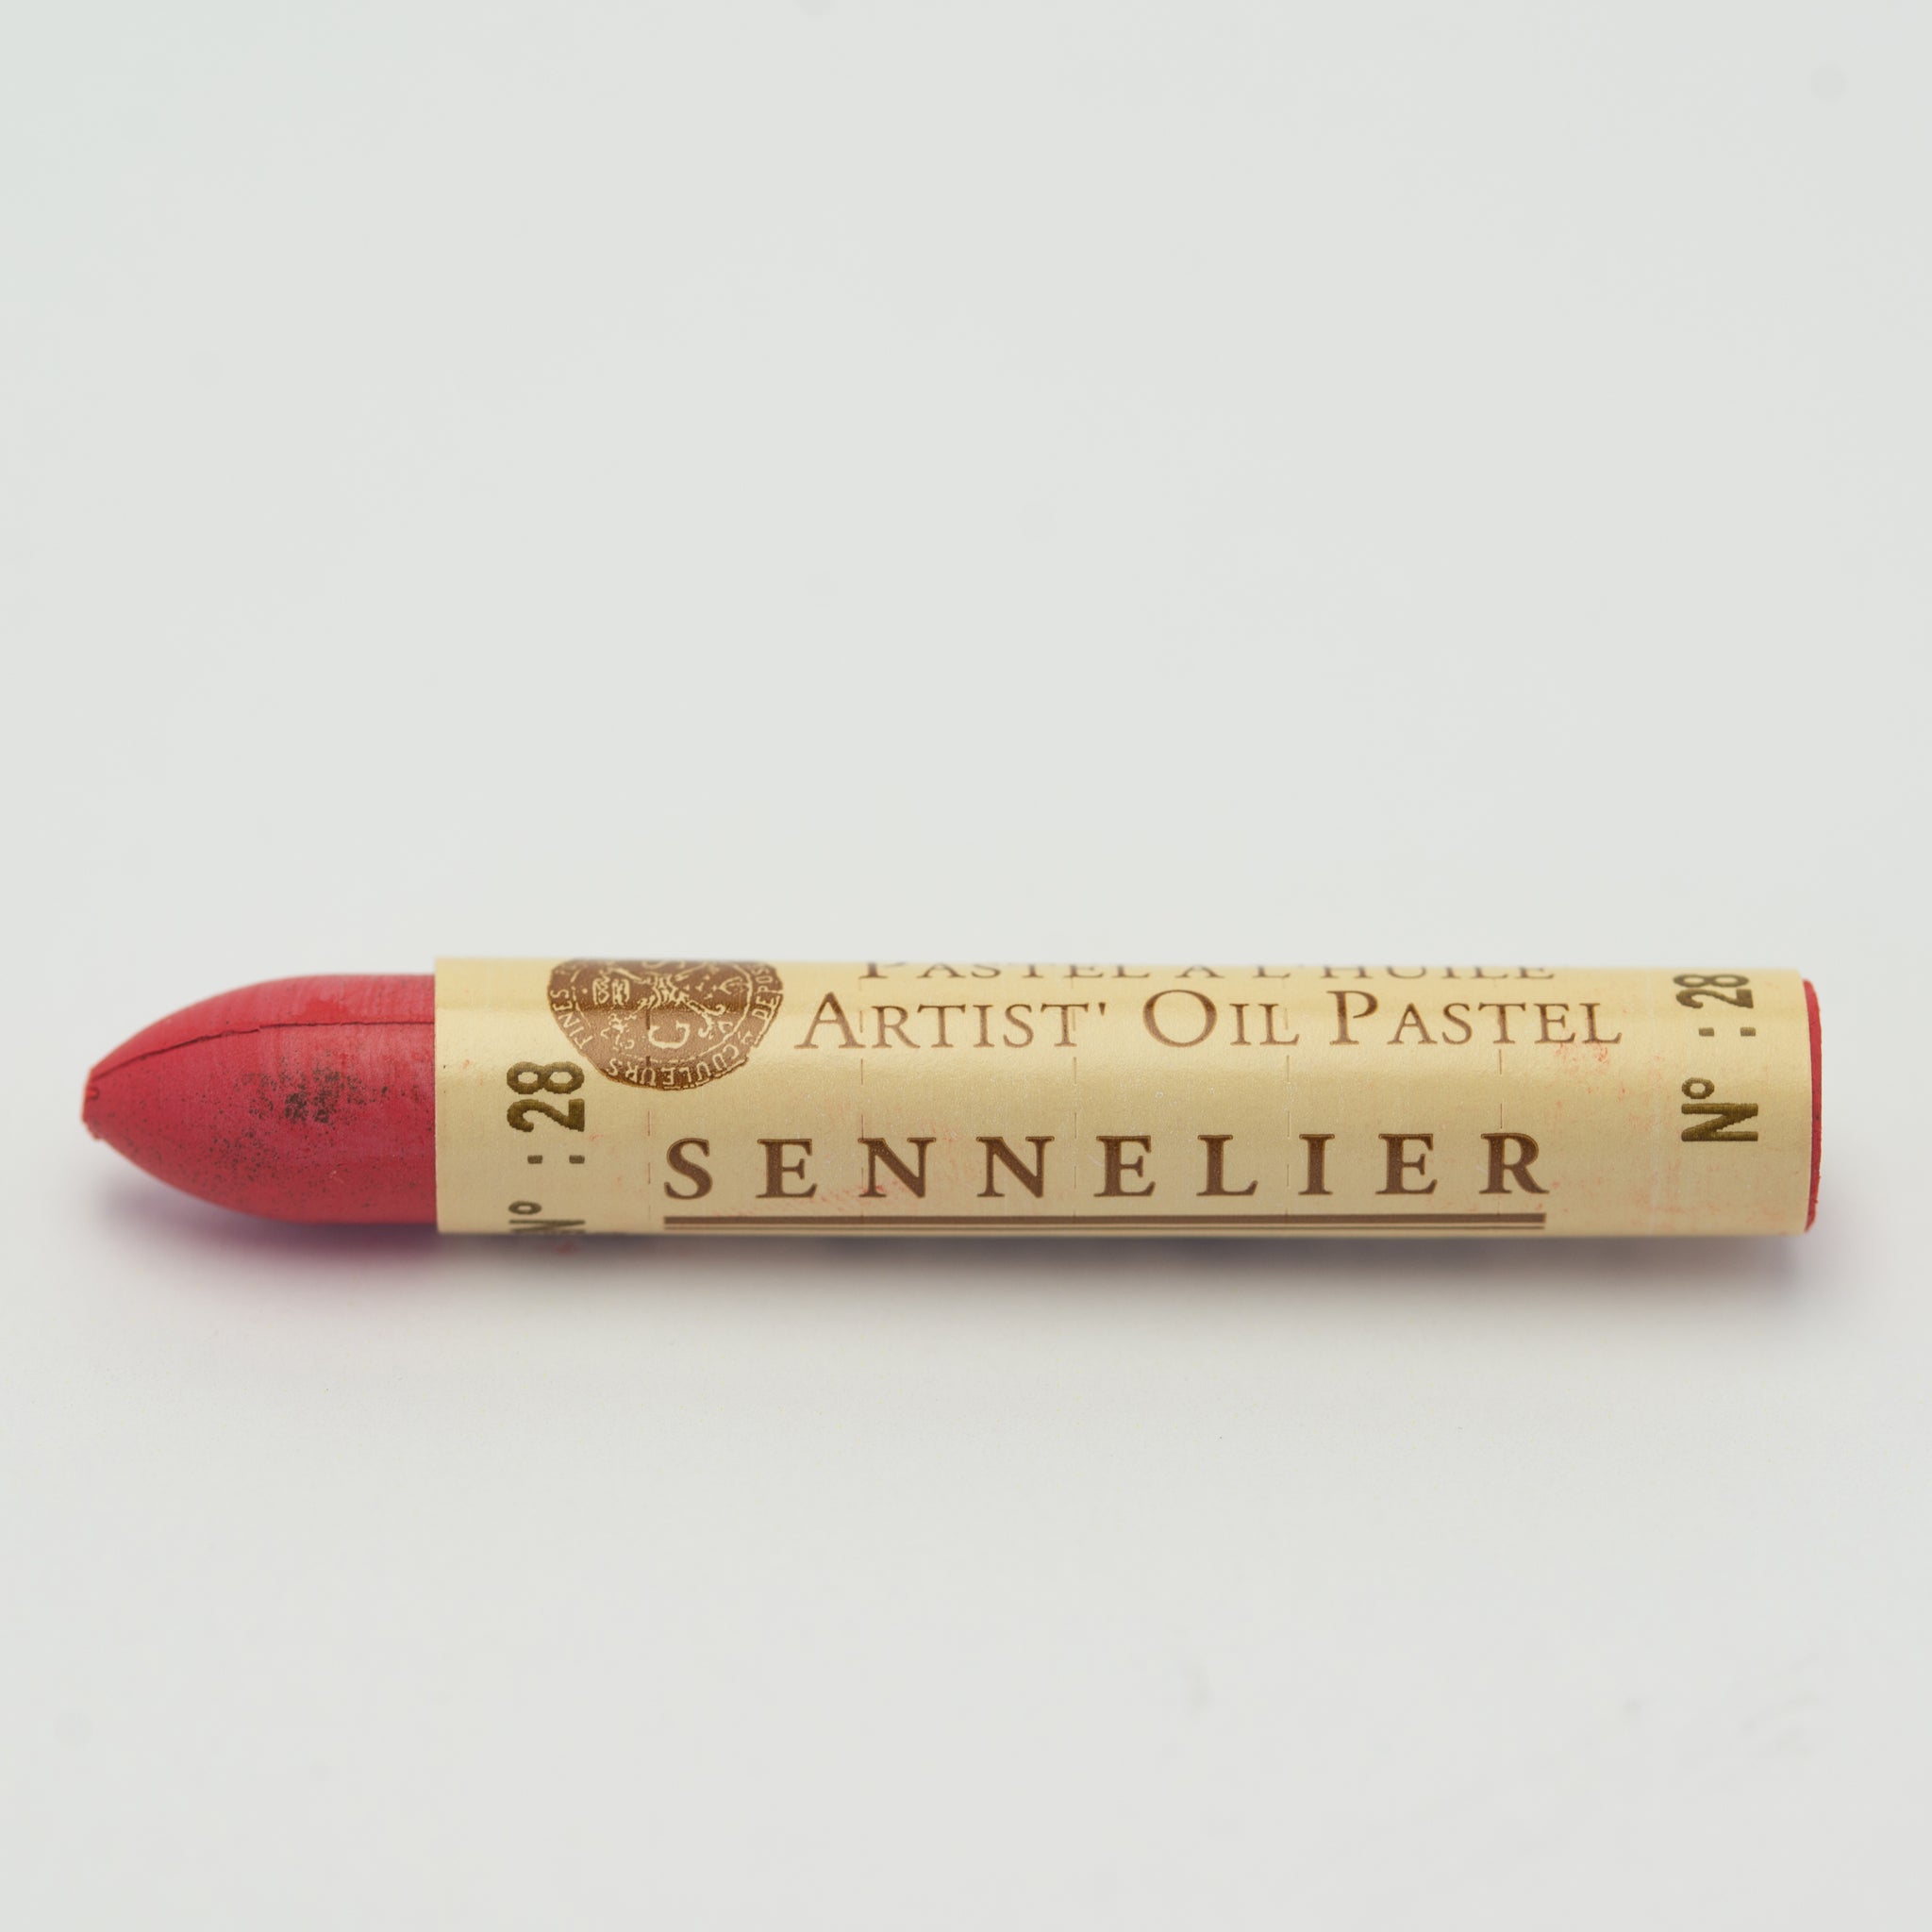 Sennelier Oil Pastels - Melbourne Etching Supplies